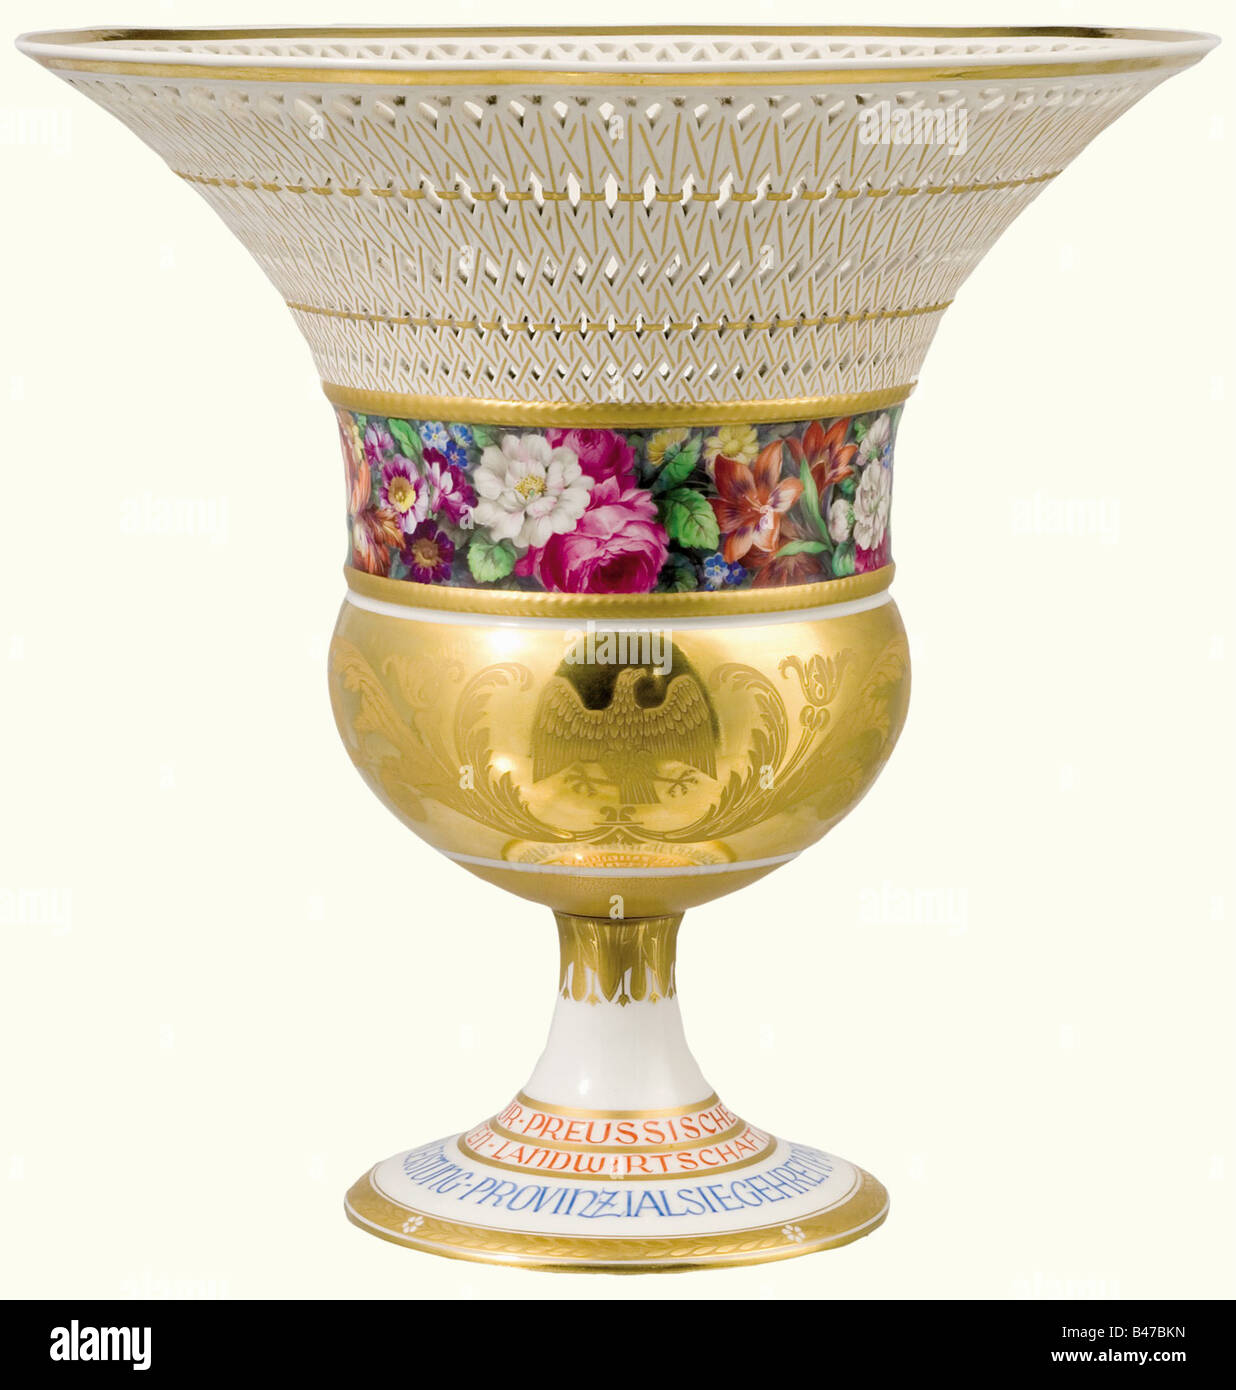 Eine KPM-Vase- und Prämienzertifikation (Königliche Porzellanmanufaktur) - der erste Preis der Provinz Prußisch 1932., Die Vase nach einem Schinkel-Entwurf, der sogenannte 'Schinkel Basket'. Weißes Porzellan. Der Kelch mit einem preussischen Adler und Blumenschmuck, der in Gold mit farbigen Blumen darunter geätzt ist. Die weit ausgebaute Felge in einem offenen Arbeitskorbmuster. Der Sockel ist aufgeschraubt und trägt die umlaufende Aufschrift "Preussisches Ministerium für Landwirtschaft, Domänen und Forsten - Provinzsiegerpreis für höhere Milchwirtschaft" (Preußenes Ministerium für Landwirtschaft, Weide, Stockfoto